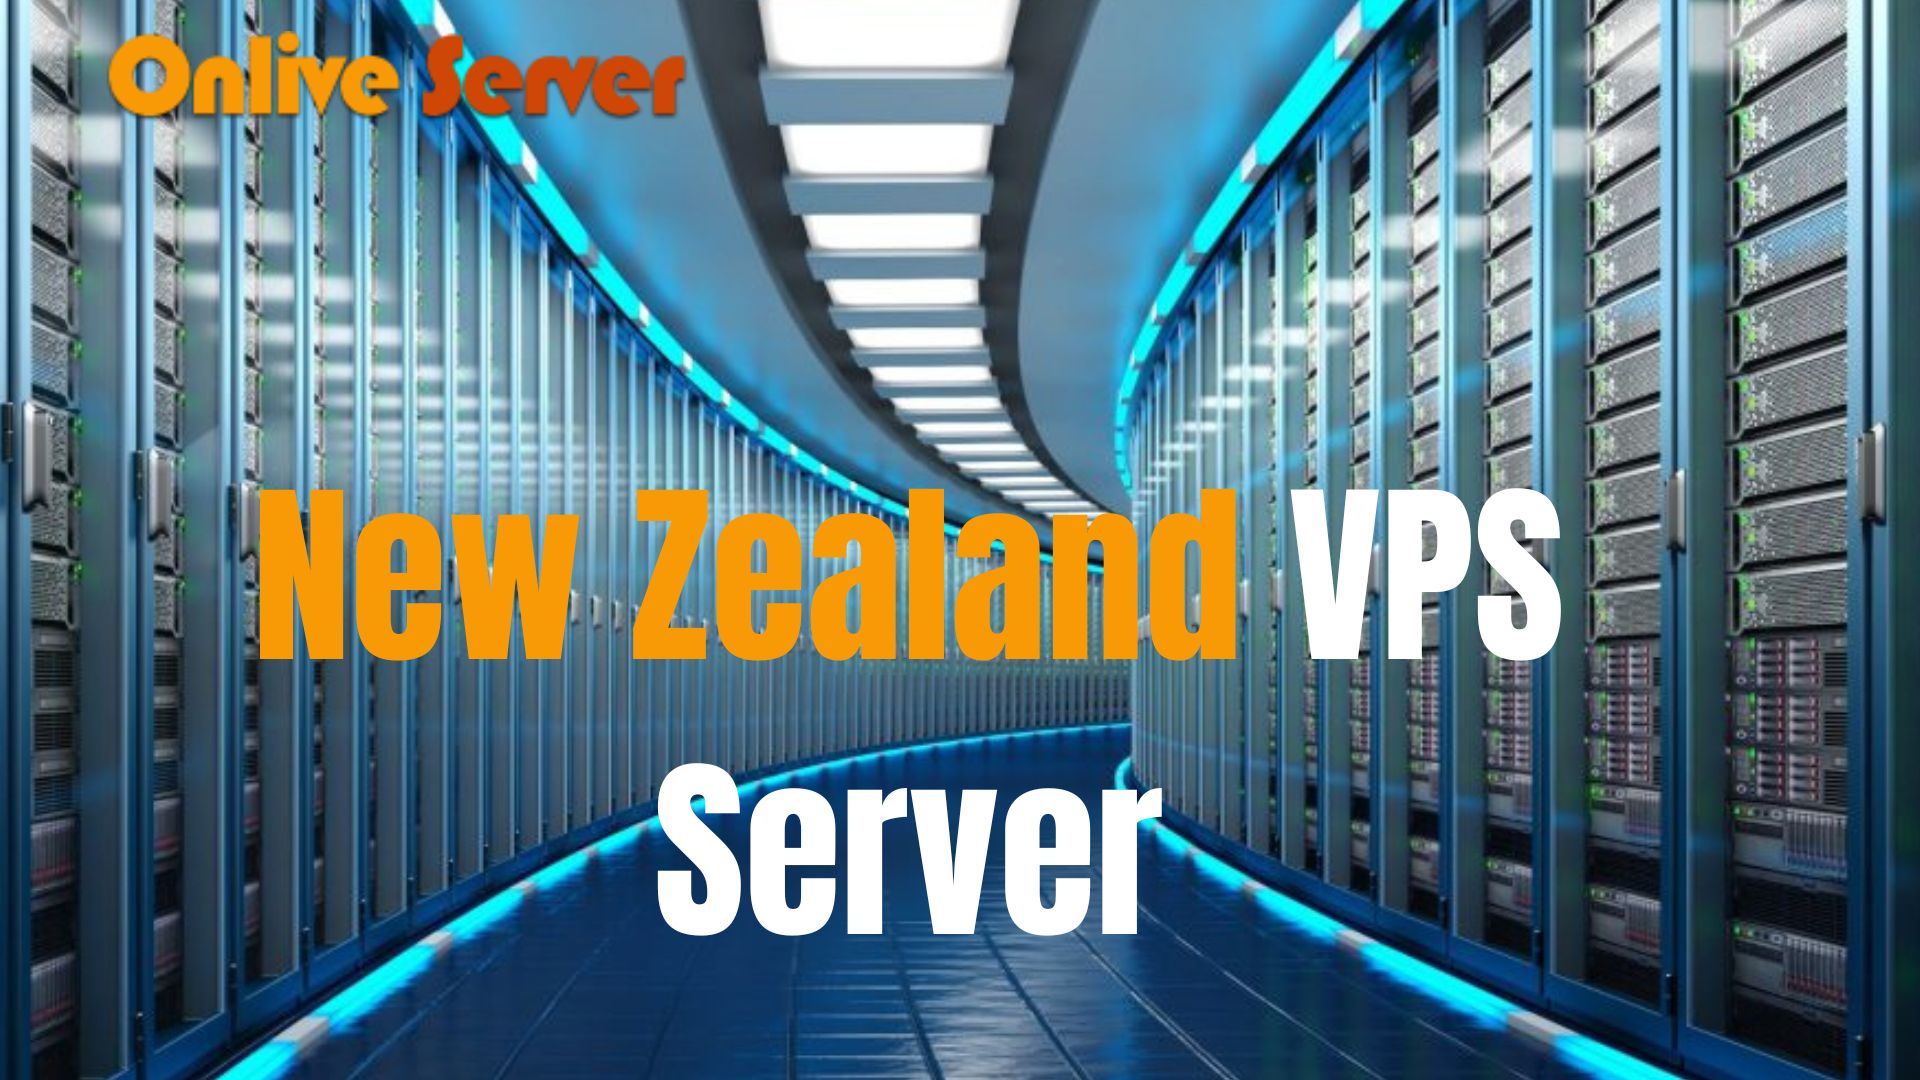 New Zealand VPS Server